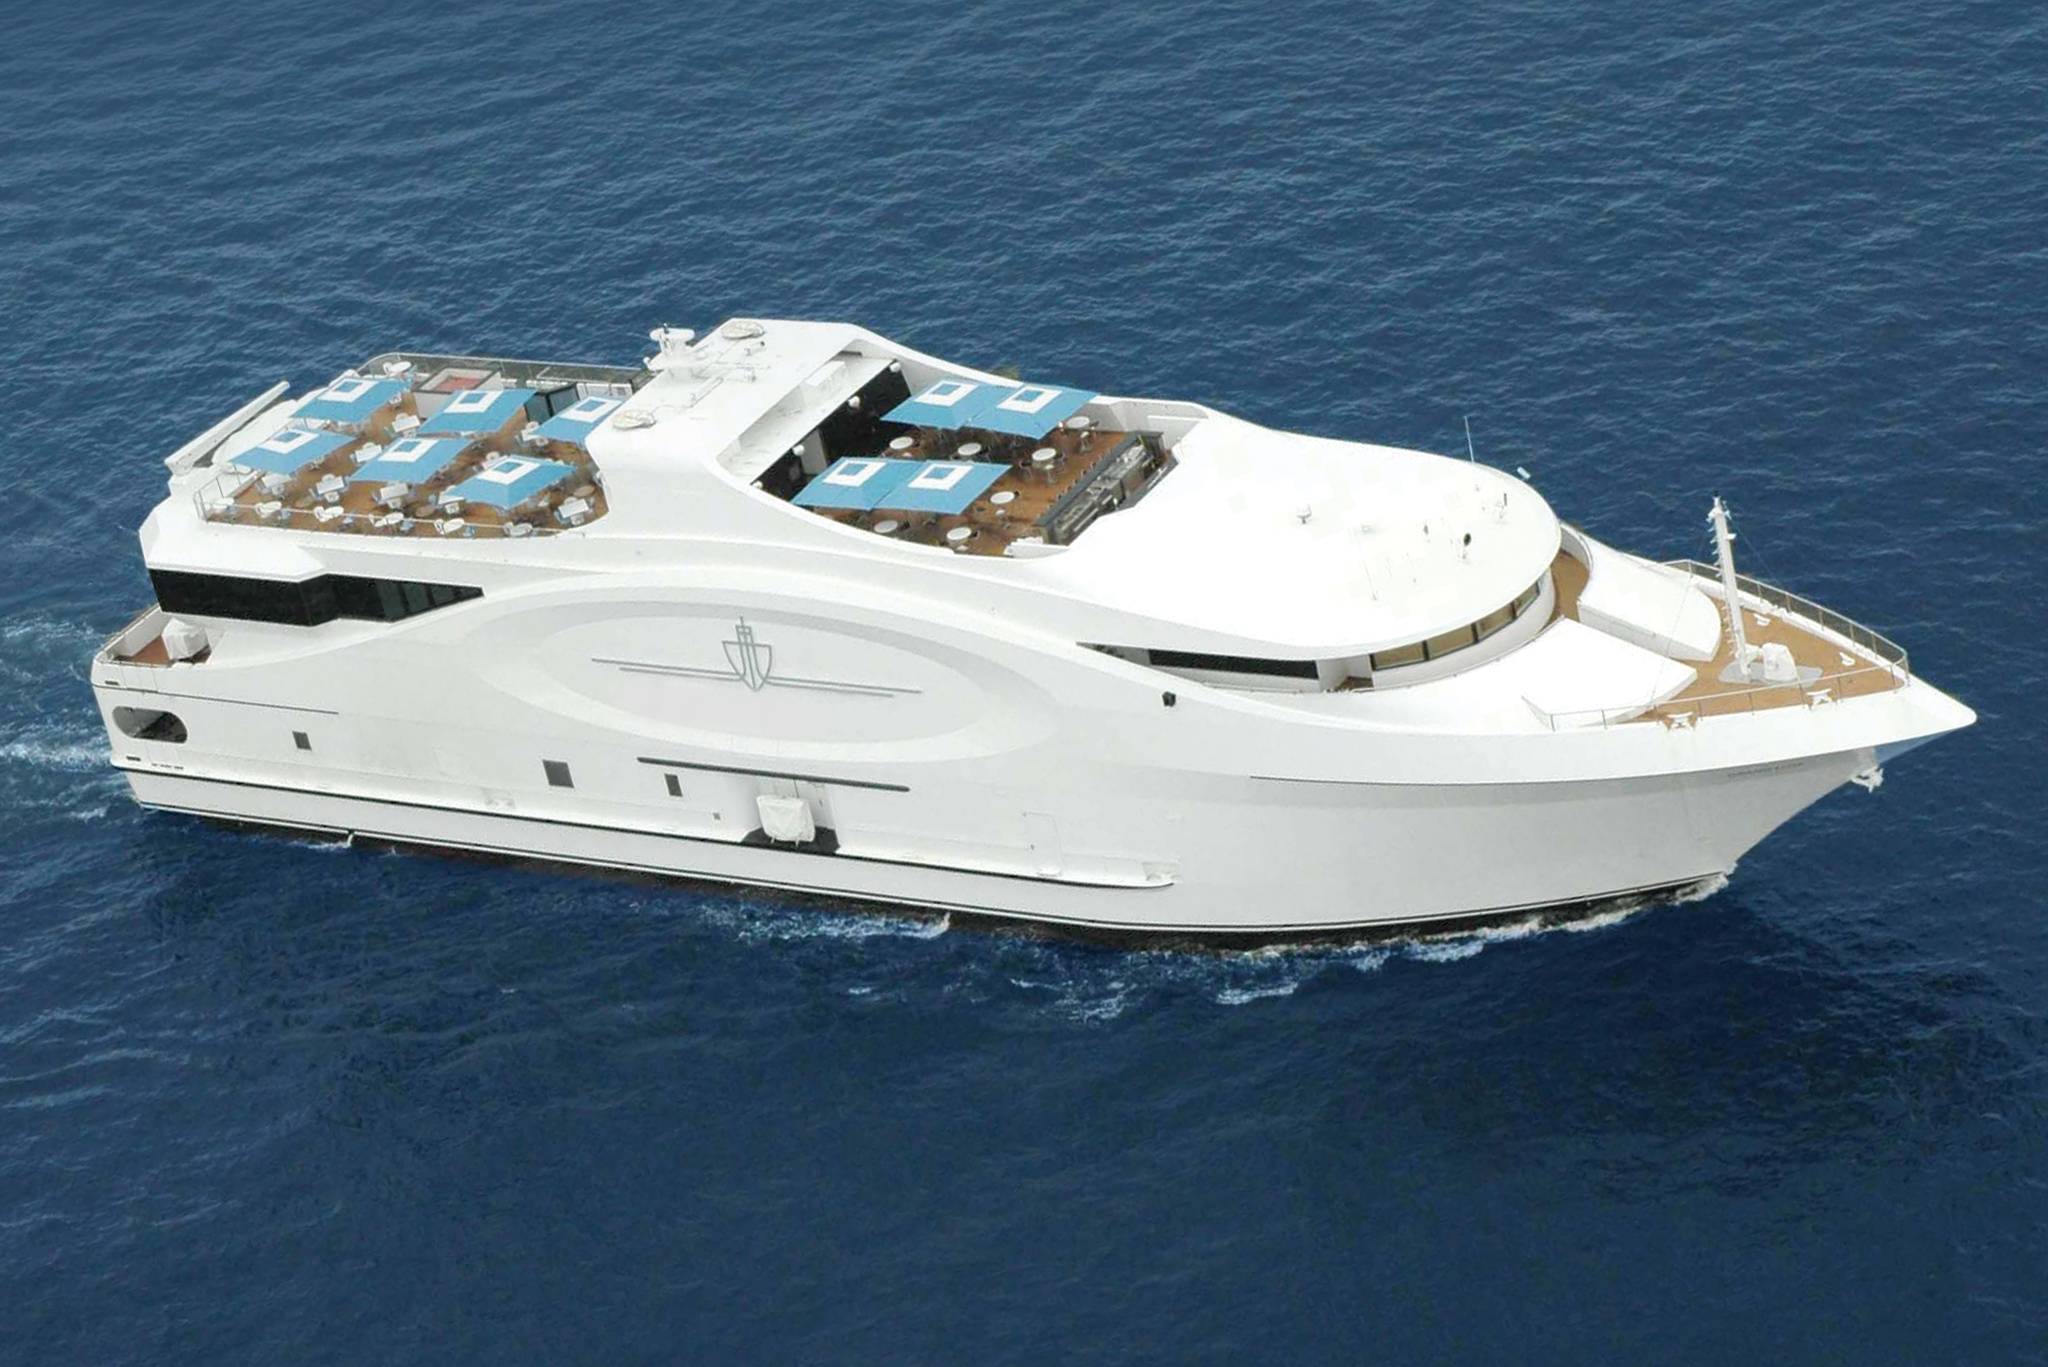 who owns seafair yacht